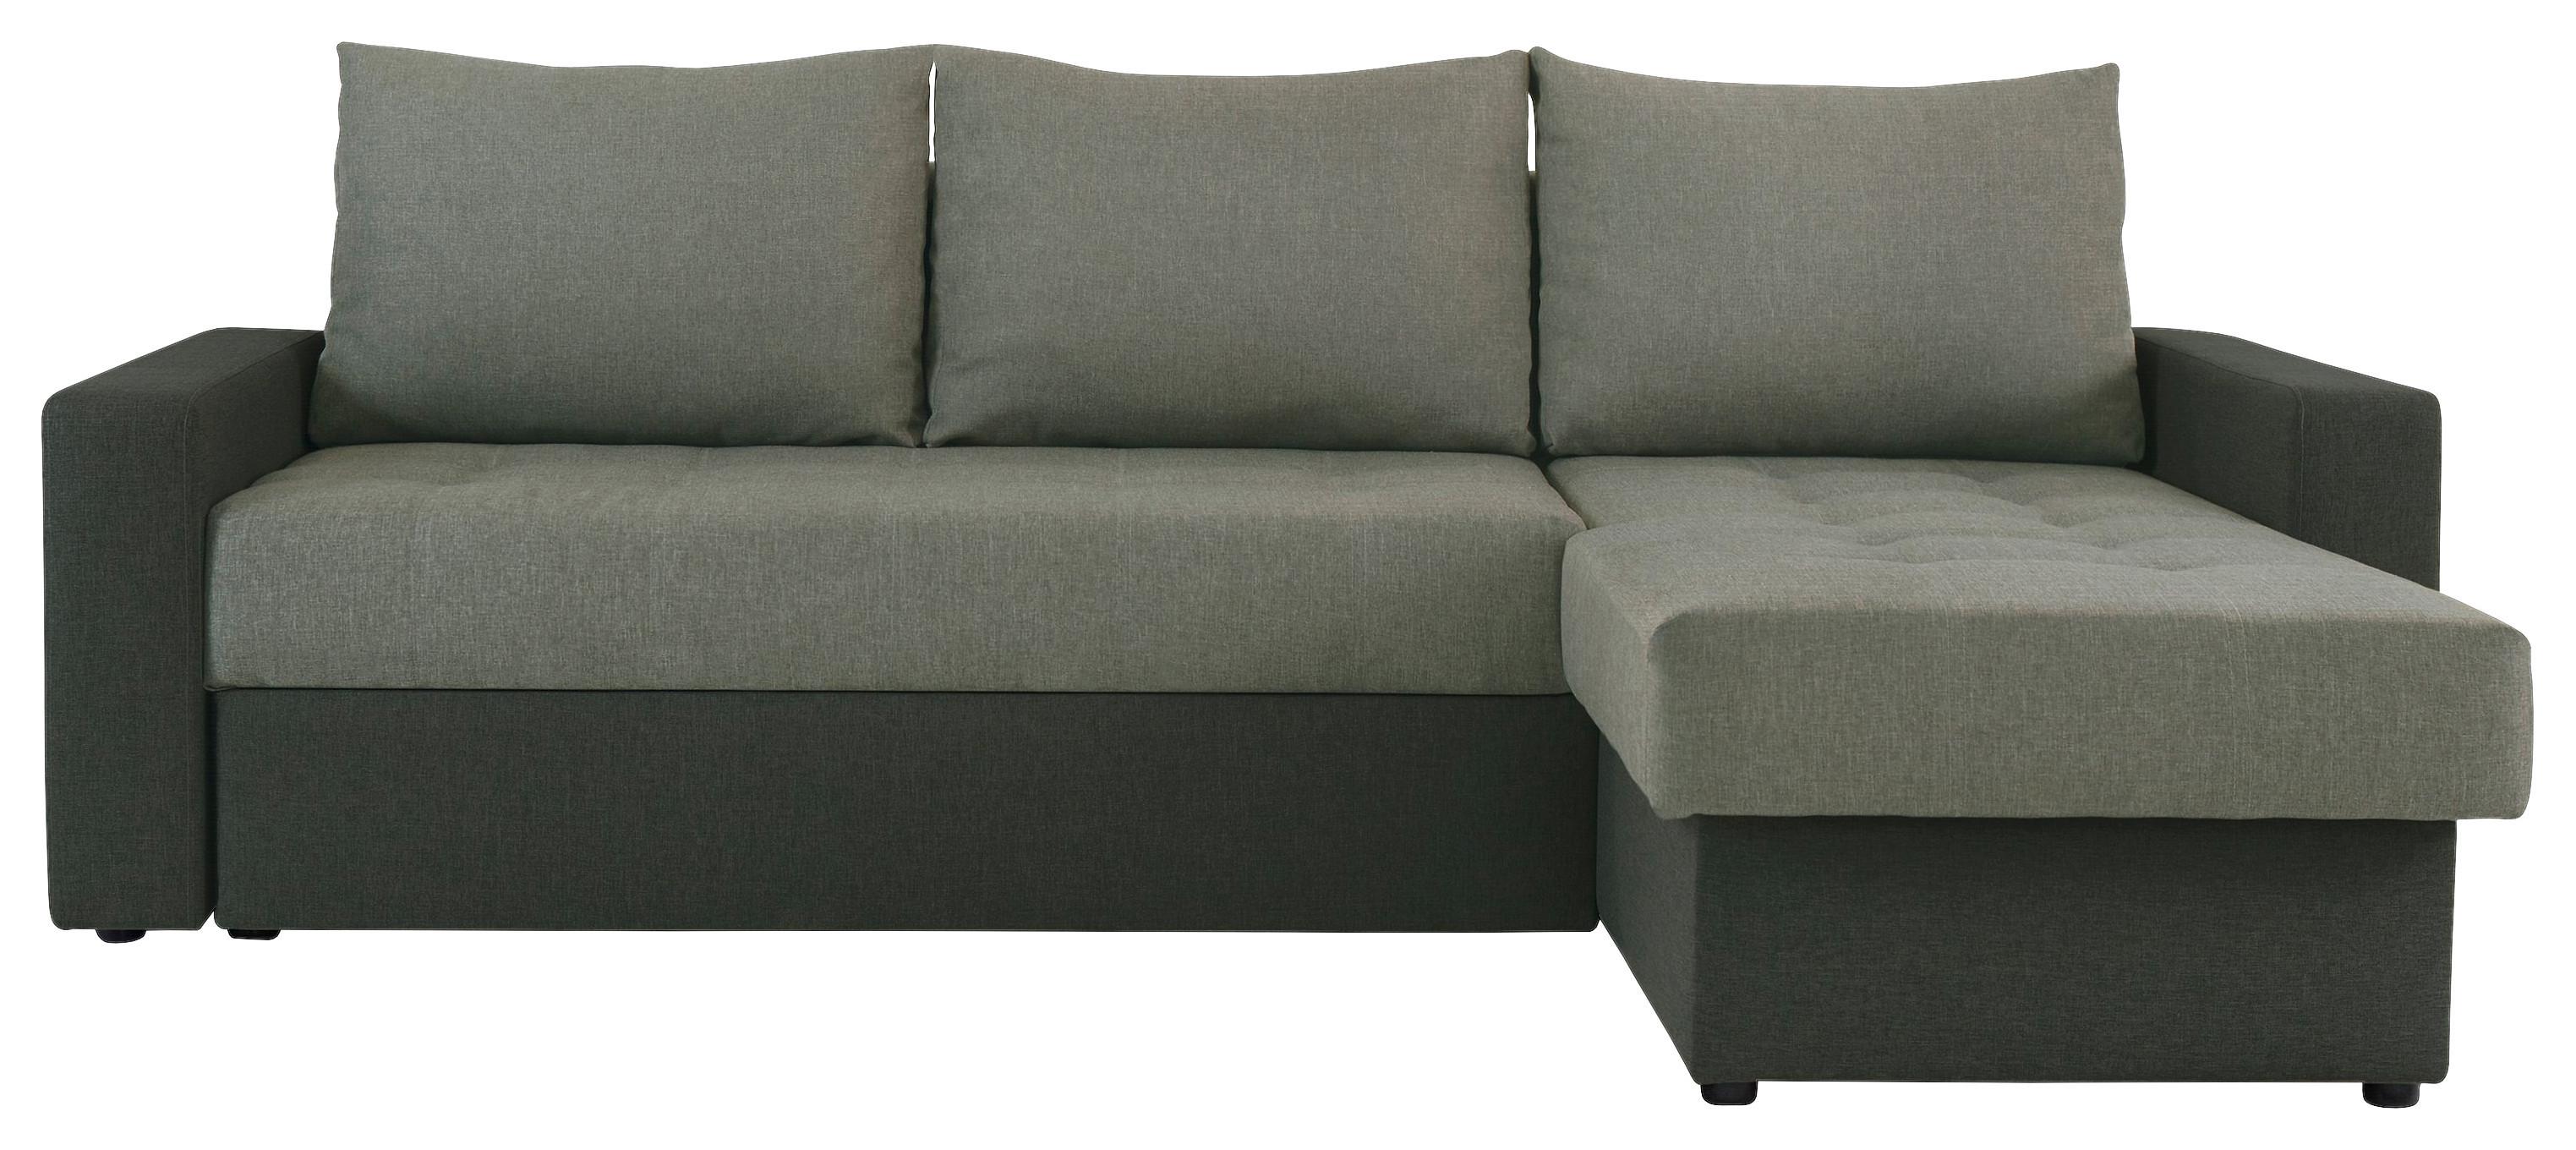 Sedežna Garnitura Atlanta, Z Ležiščem - črna/zelena, Moderno, tekstil (230/160cm) - Modern Living